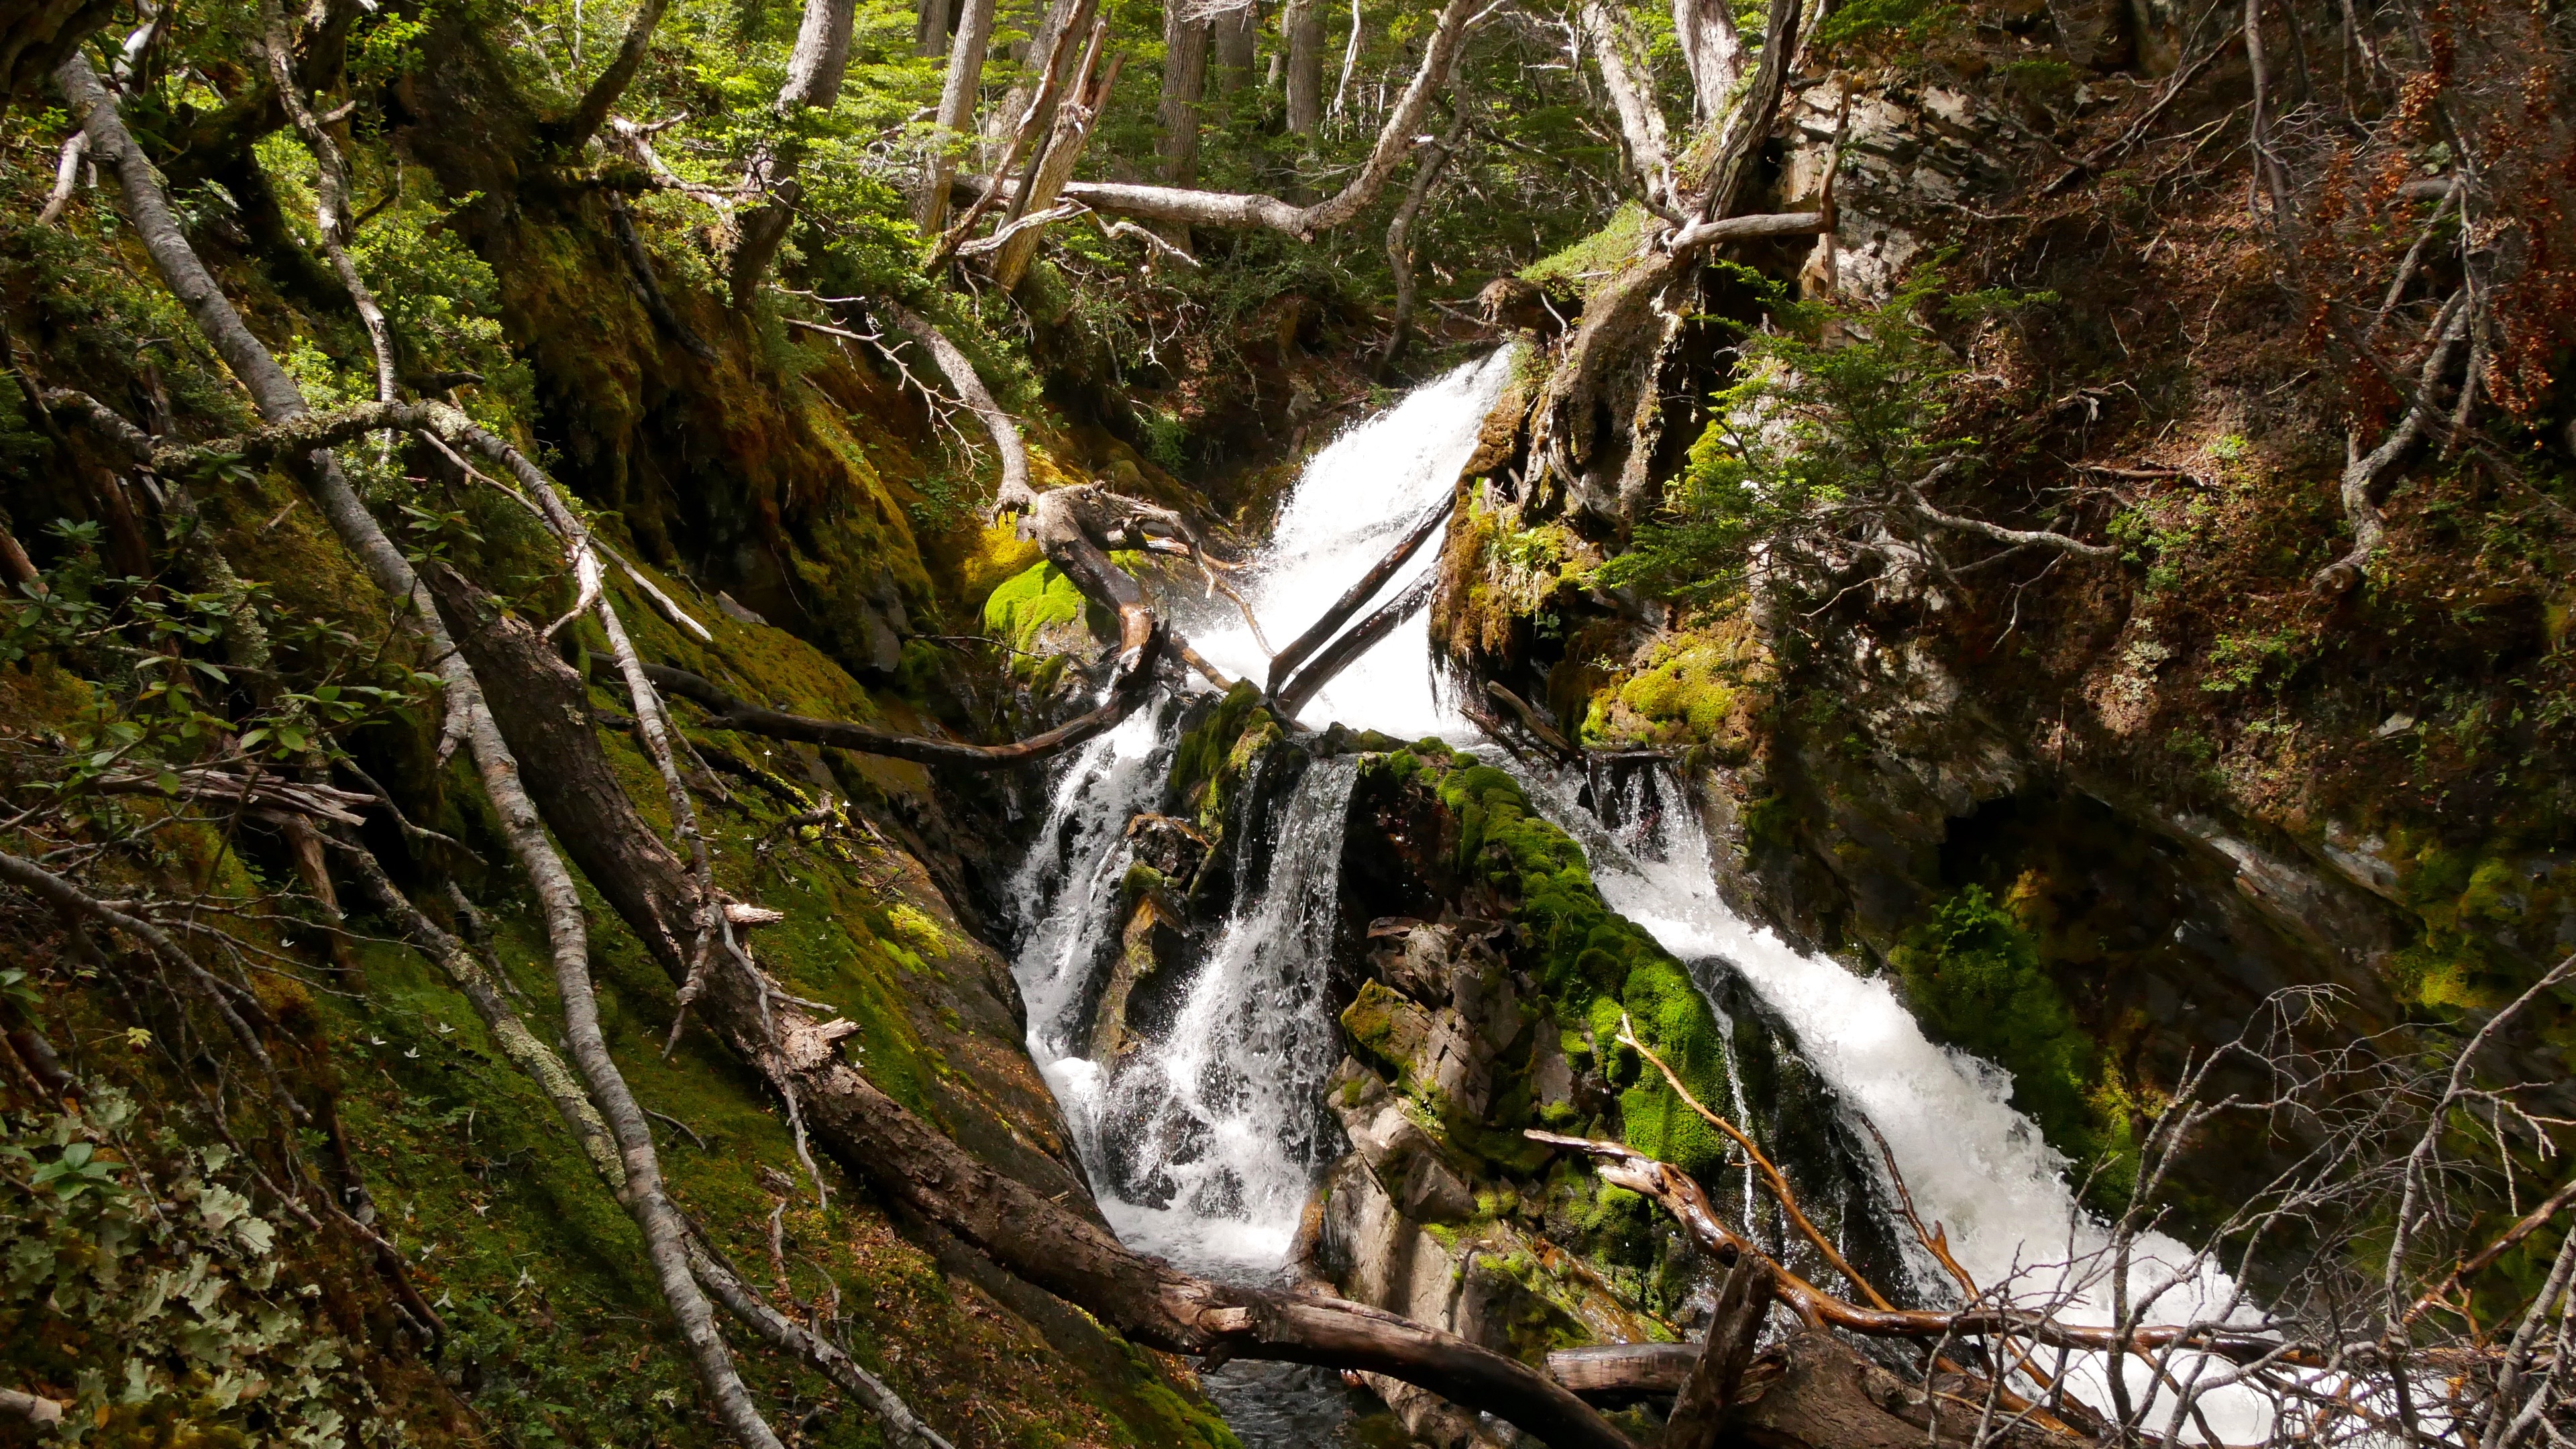 Abb. 2 Wasserfall am Río Róbalo mit steilen, von feuchtigkeitsliebenden Moosen und Hautfarnen bewachsenen Felsen.